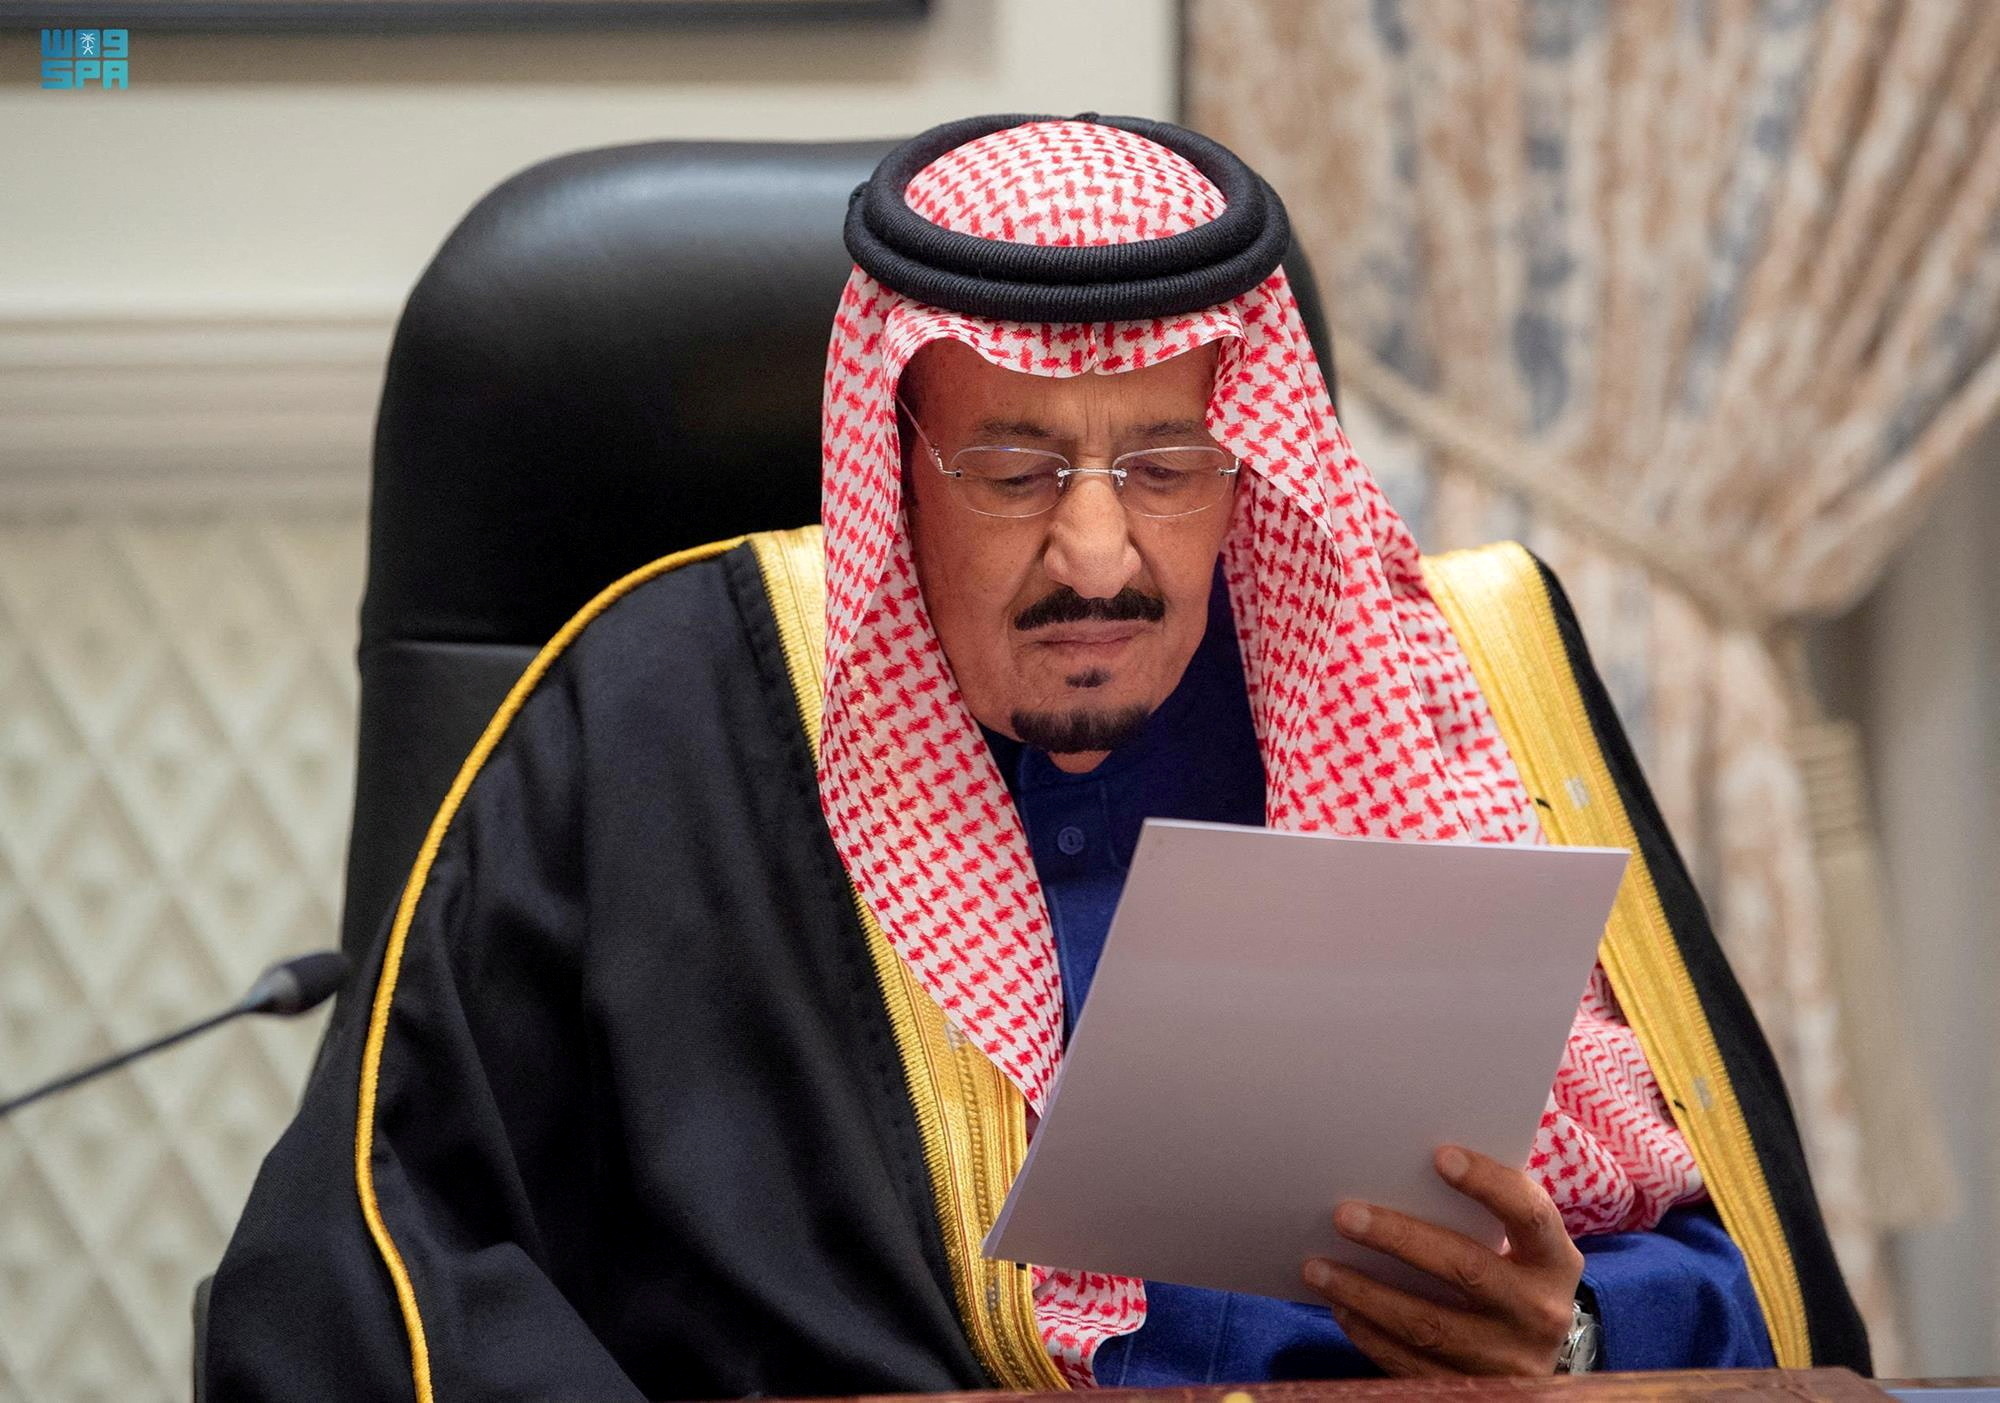 Saudi King Salman leaves hospital, says royal court